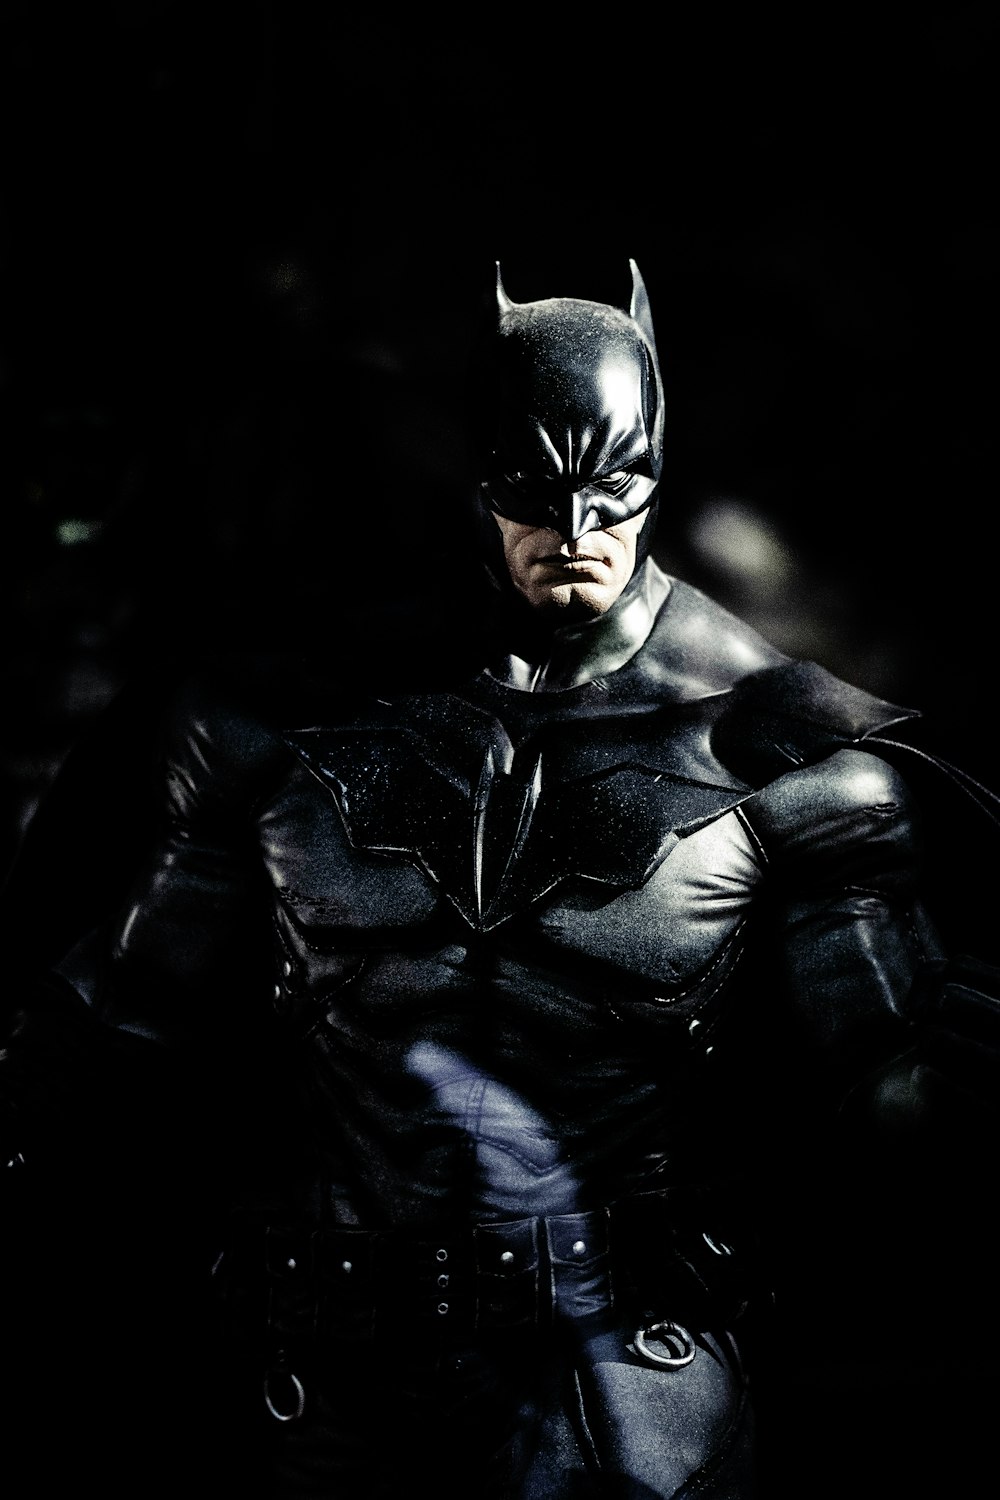 Imágenes de The Batman | Descarga imágenes gratuitas en Unsplash